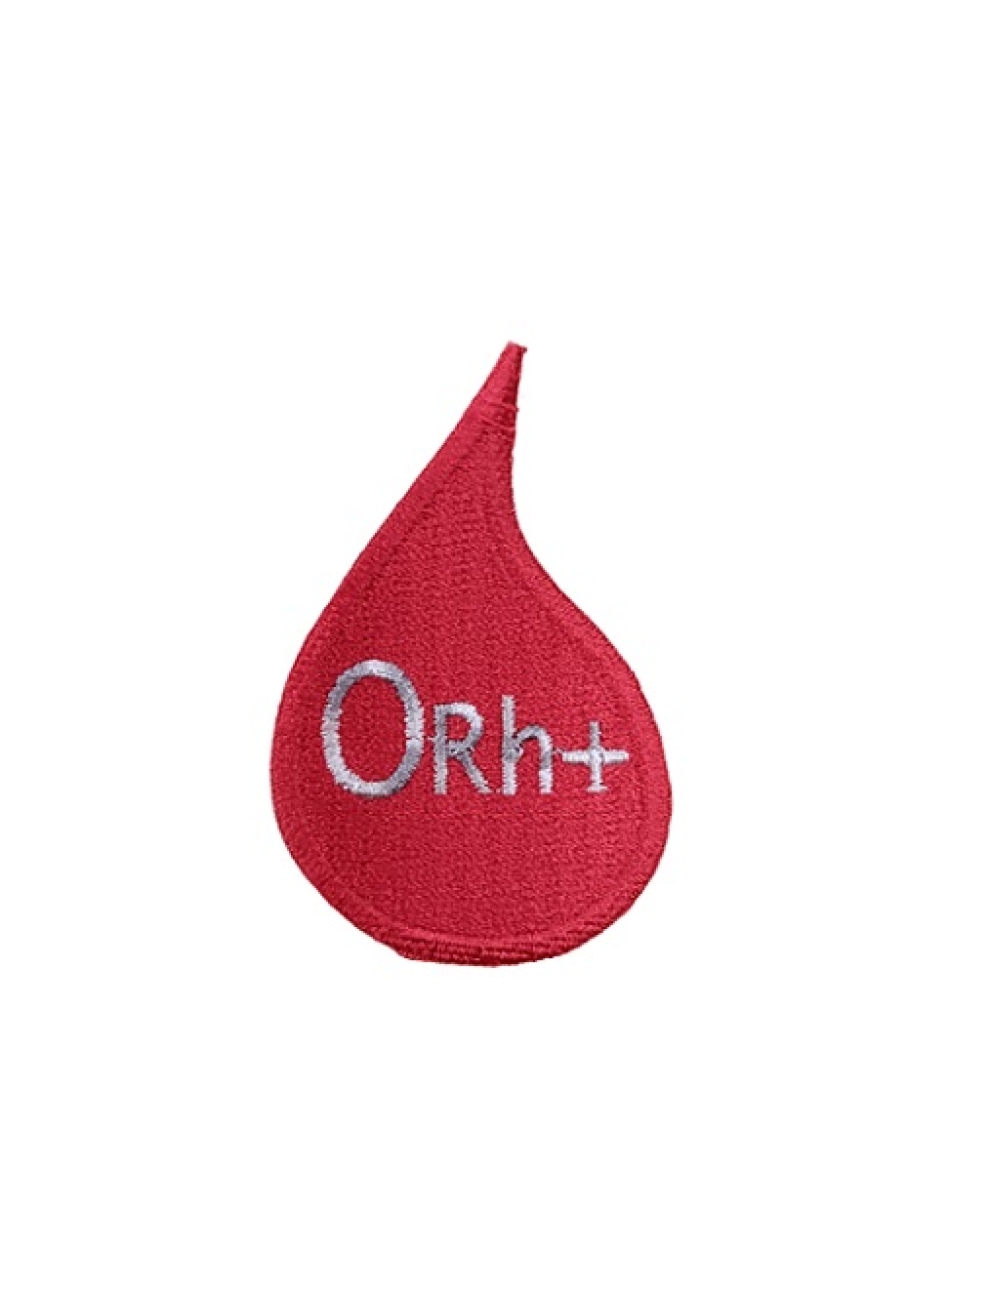 Gota de Sangue - O RH +